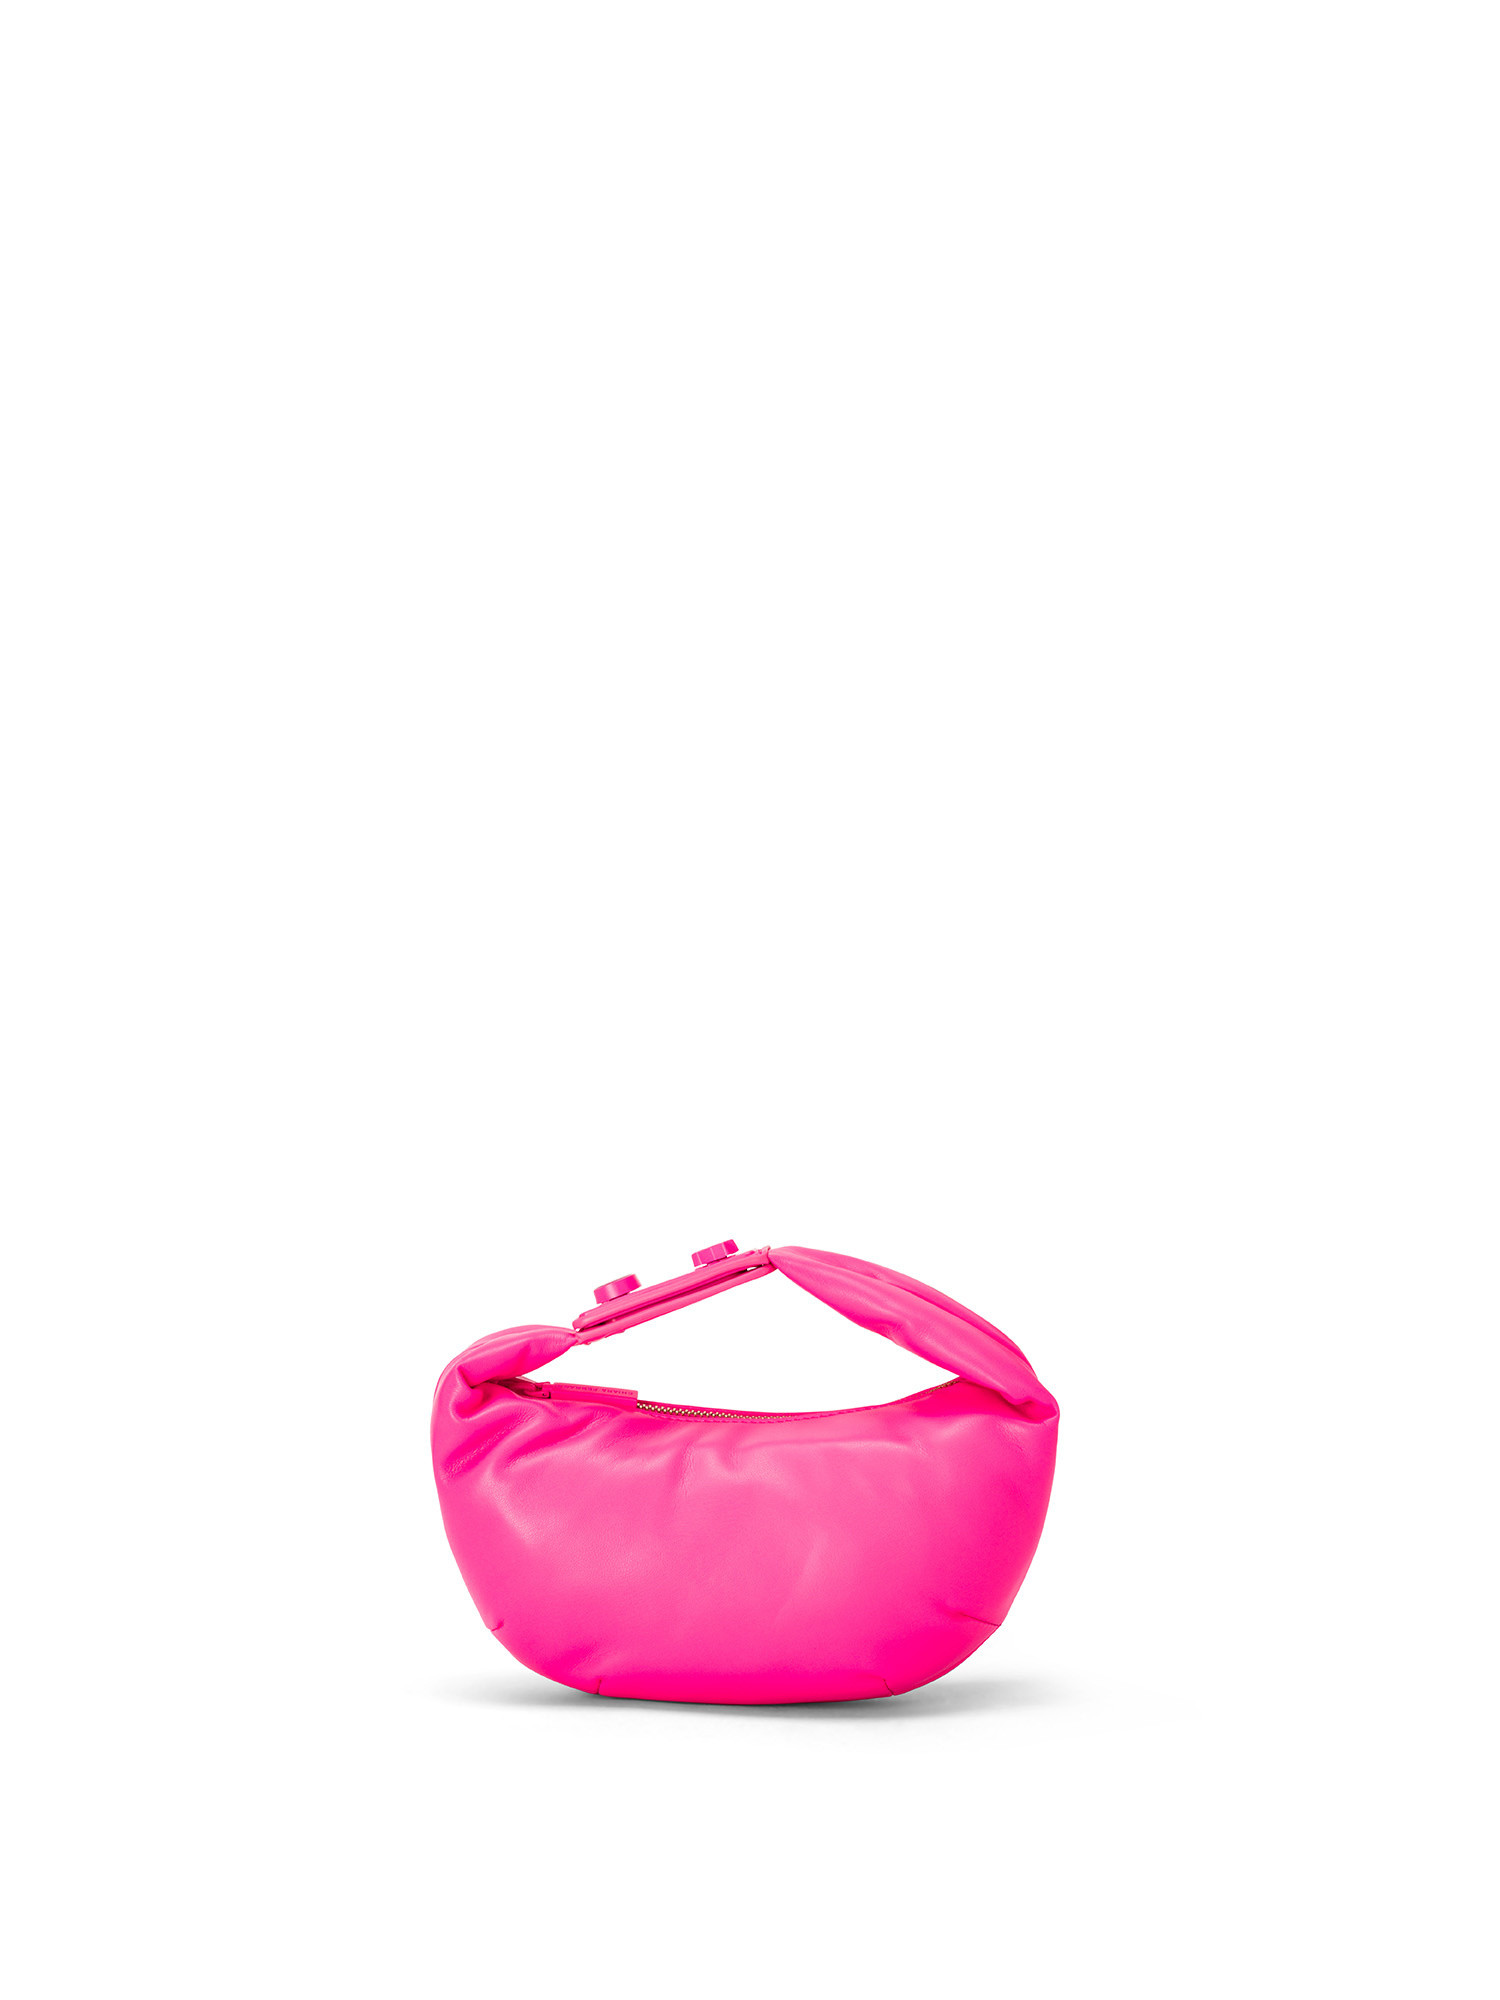 Chiara Ferragni - Range E eye star lock bag, Pink, large image number 0